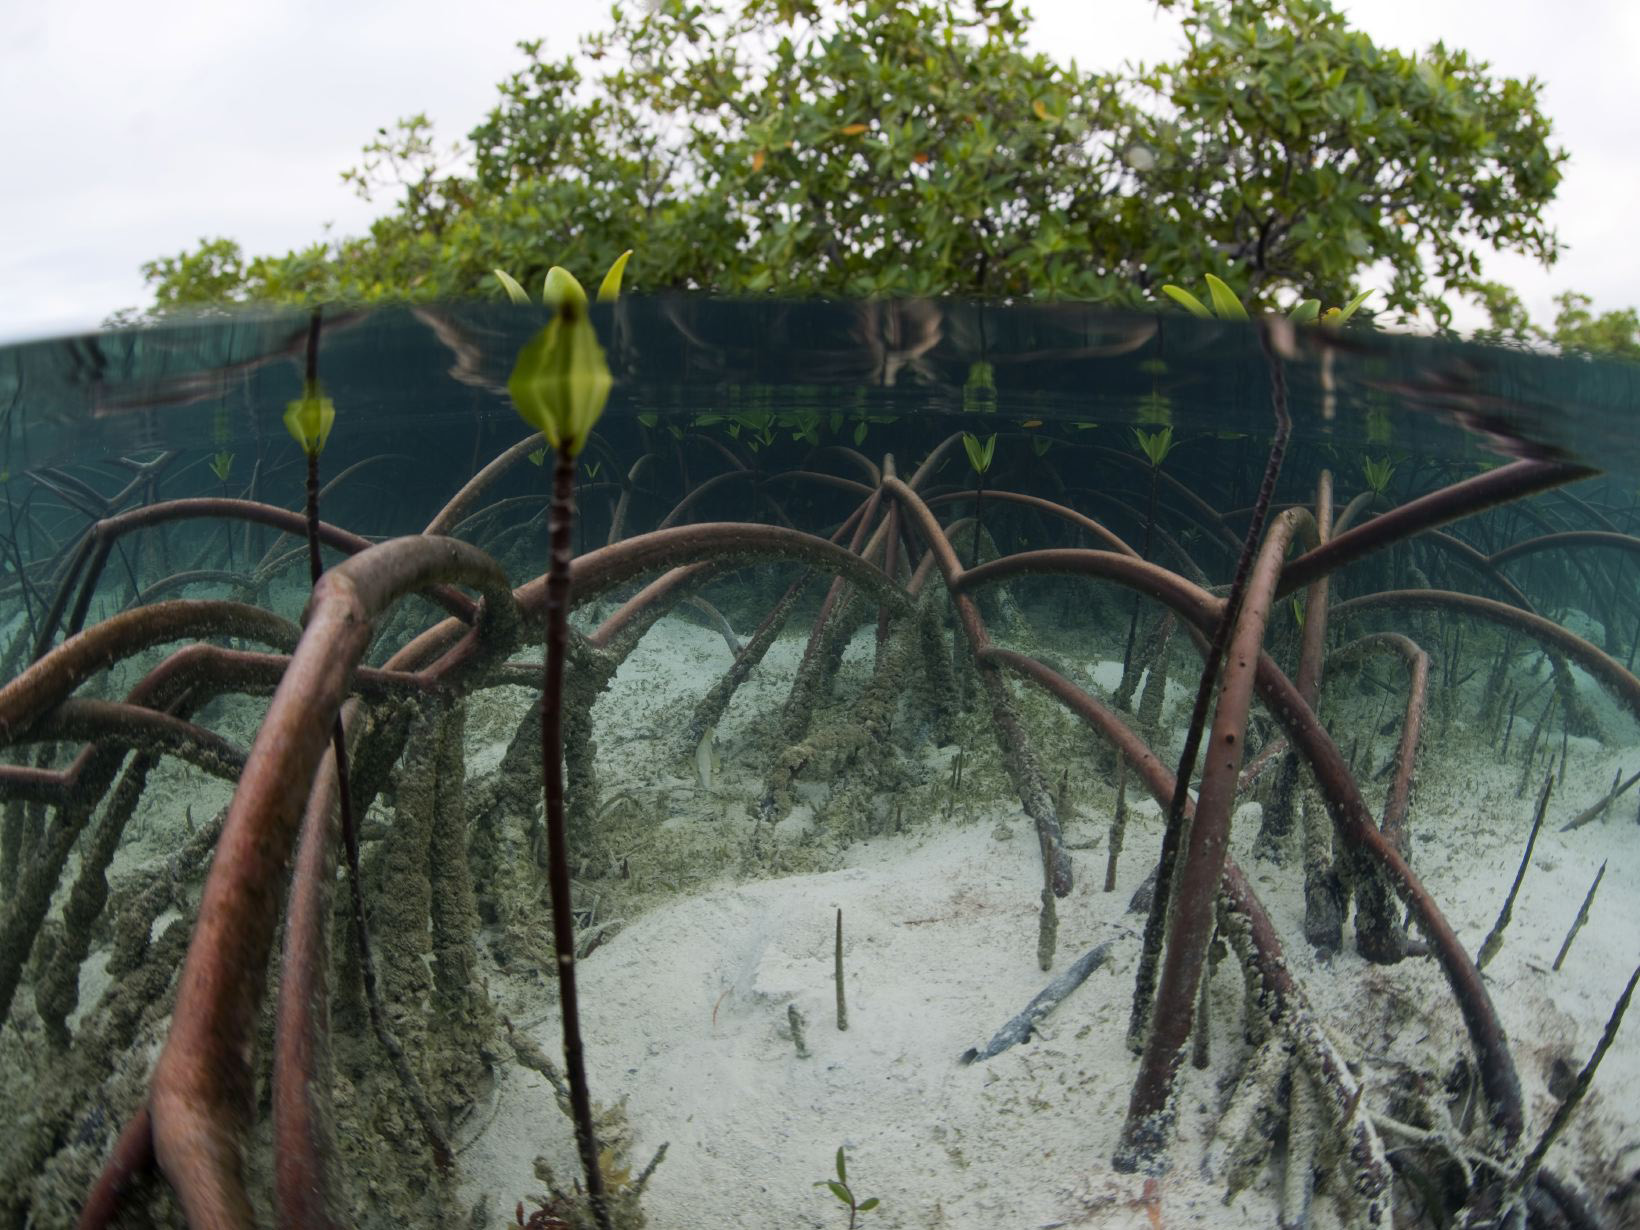 Underwater view of mangroves.